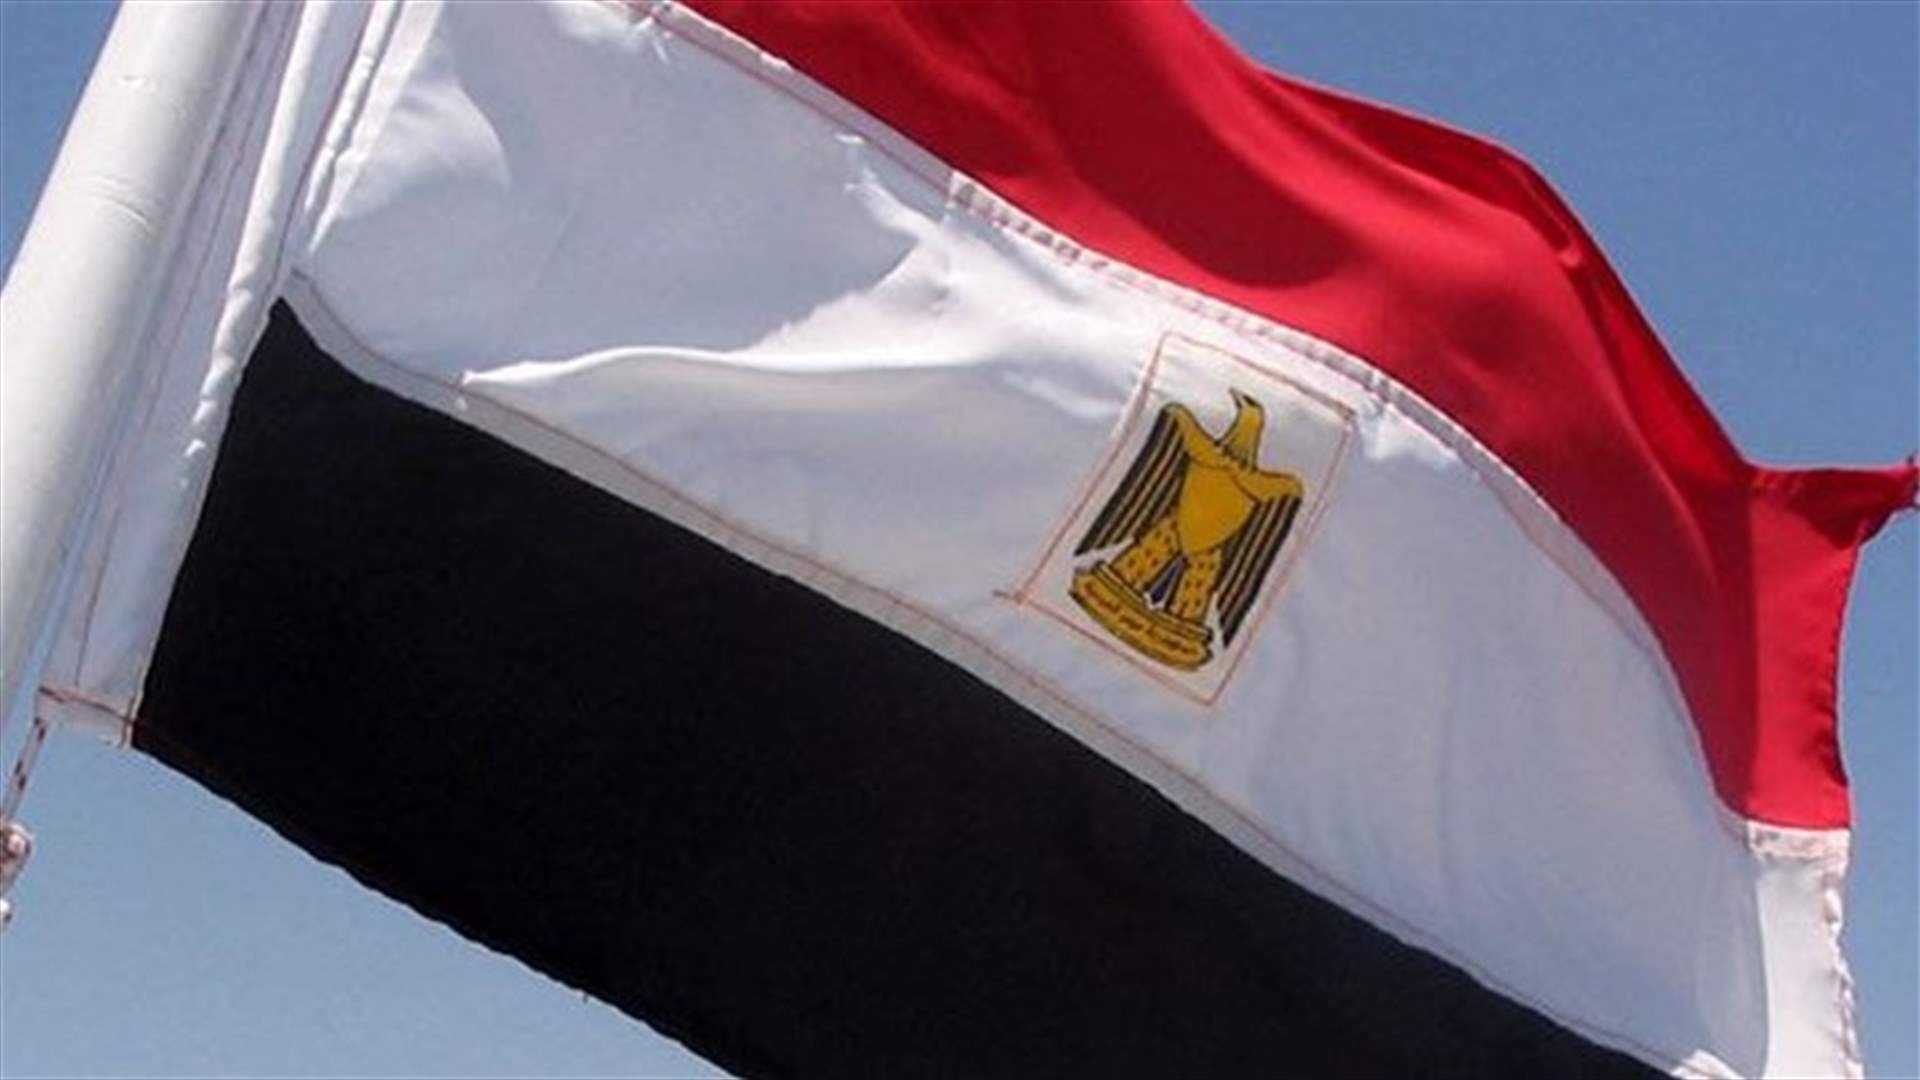 القضاء الإداري المصري يوقف إجراء الانتخابات التشريعية